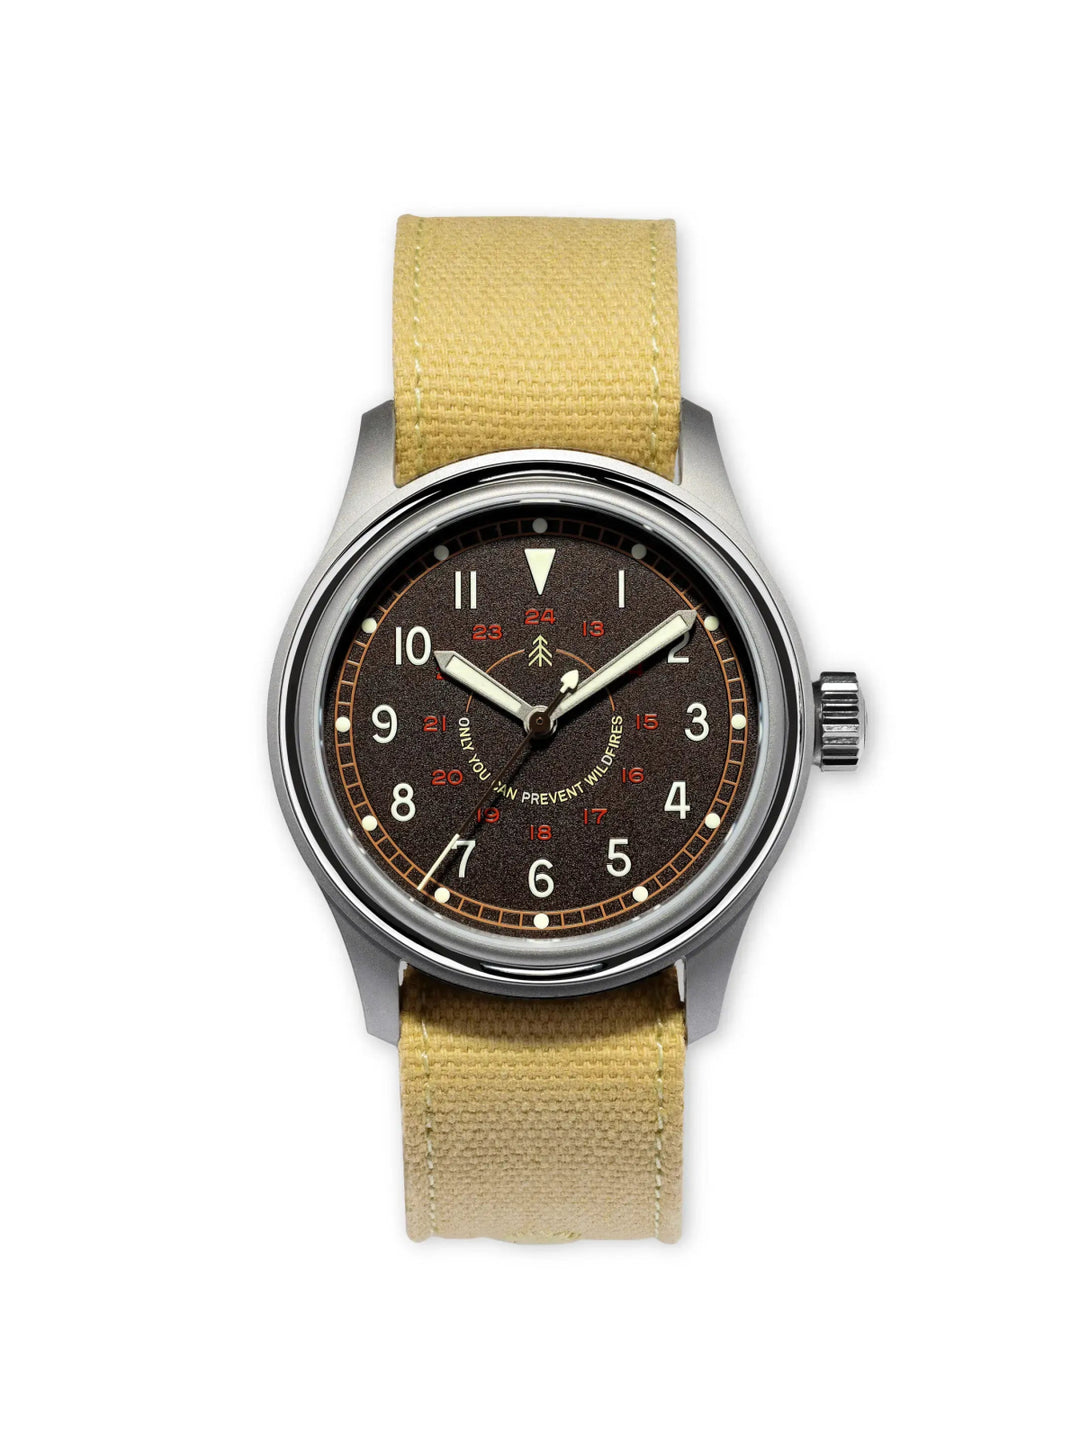 The Smokey '64 - VERO Watch Company